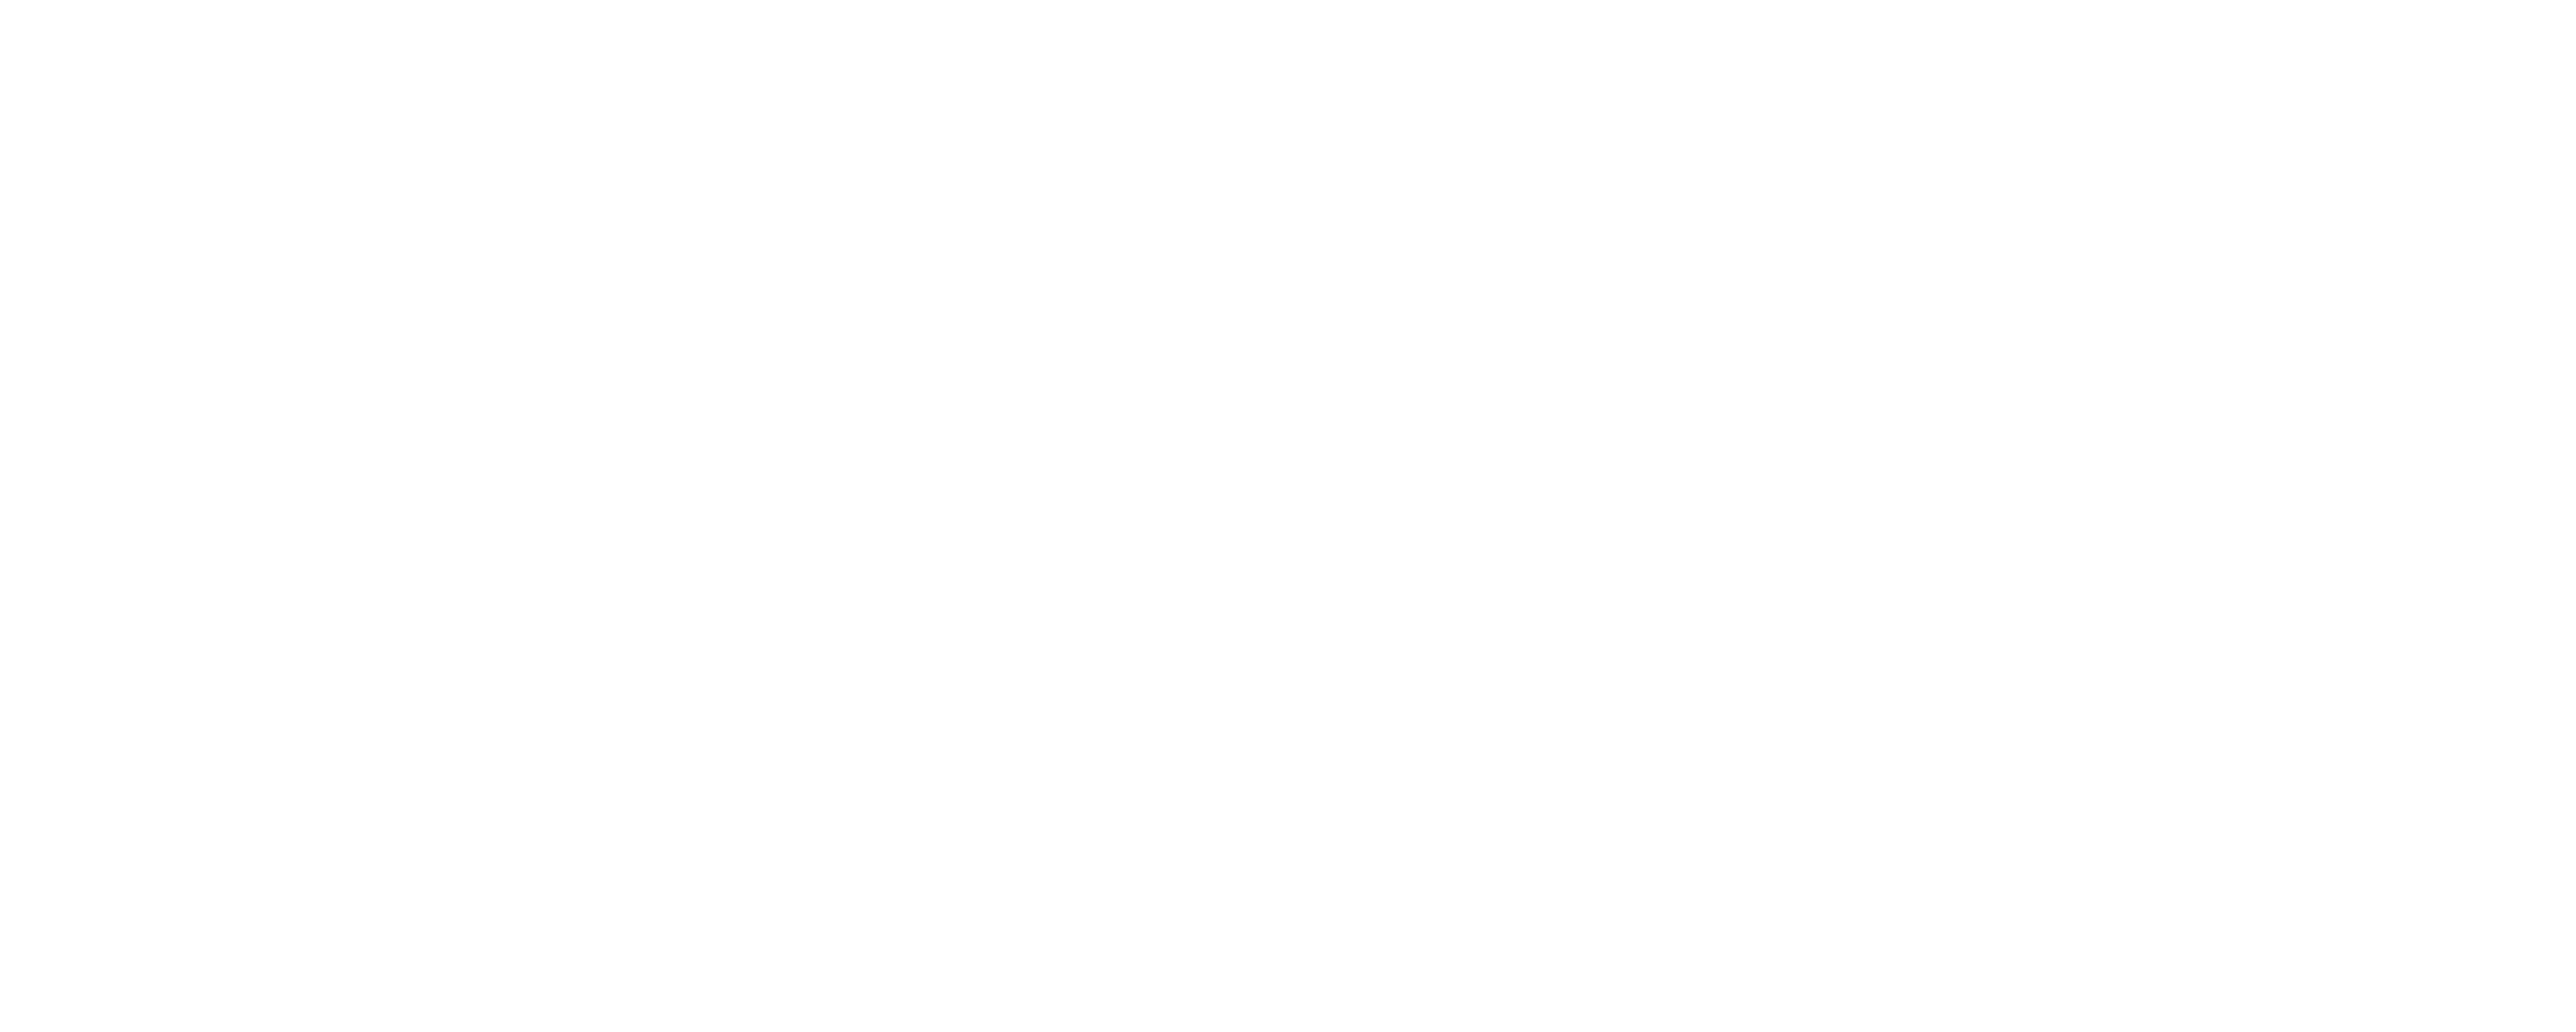 Coey Stairs & Railings